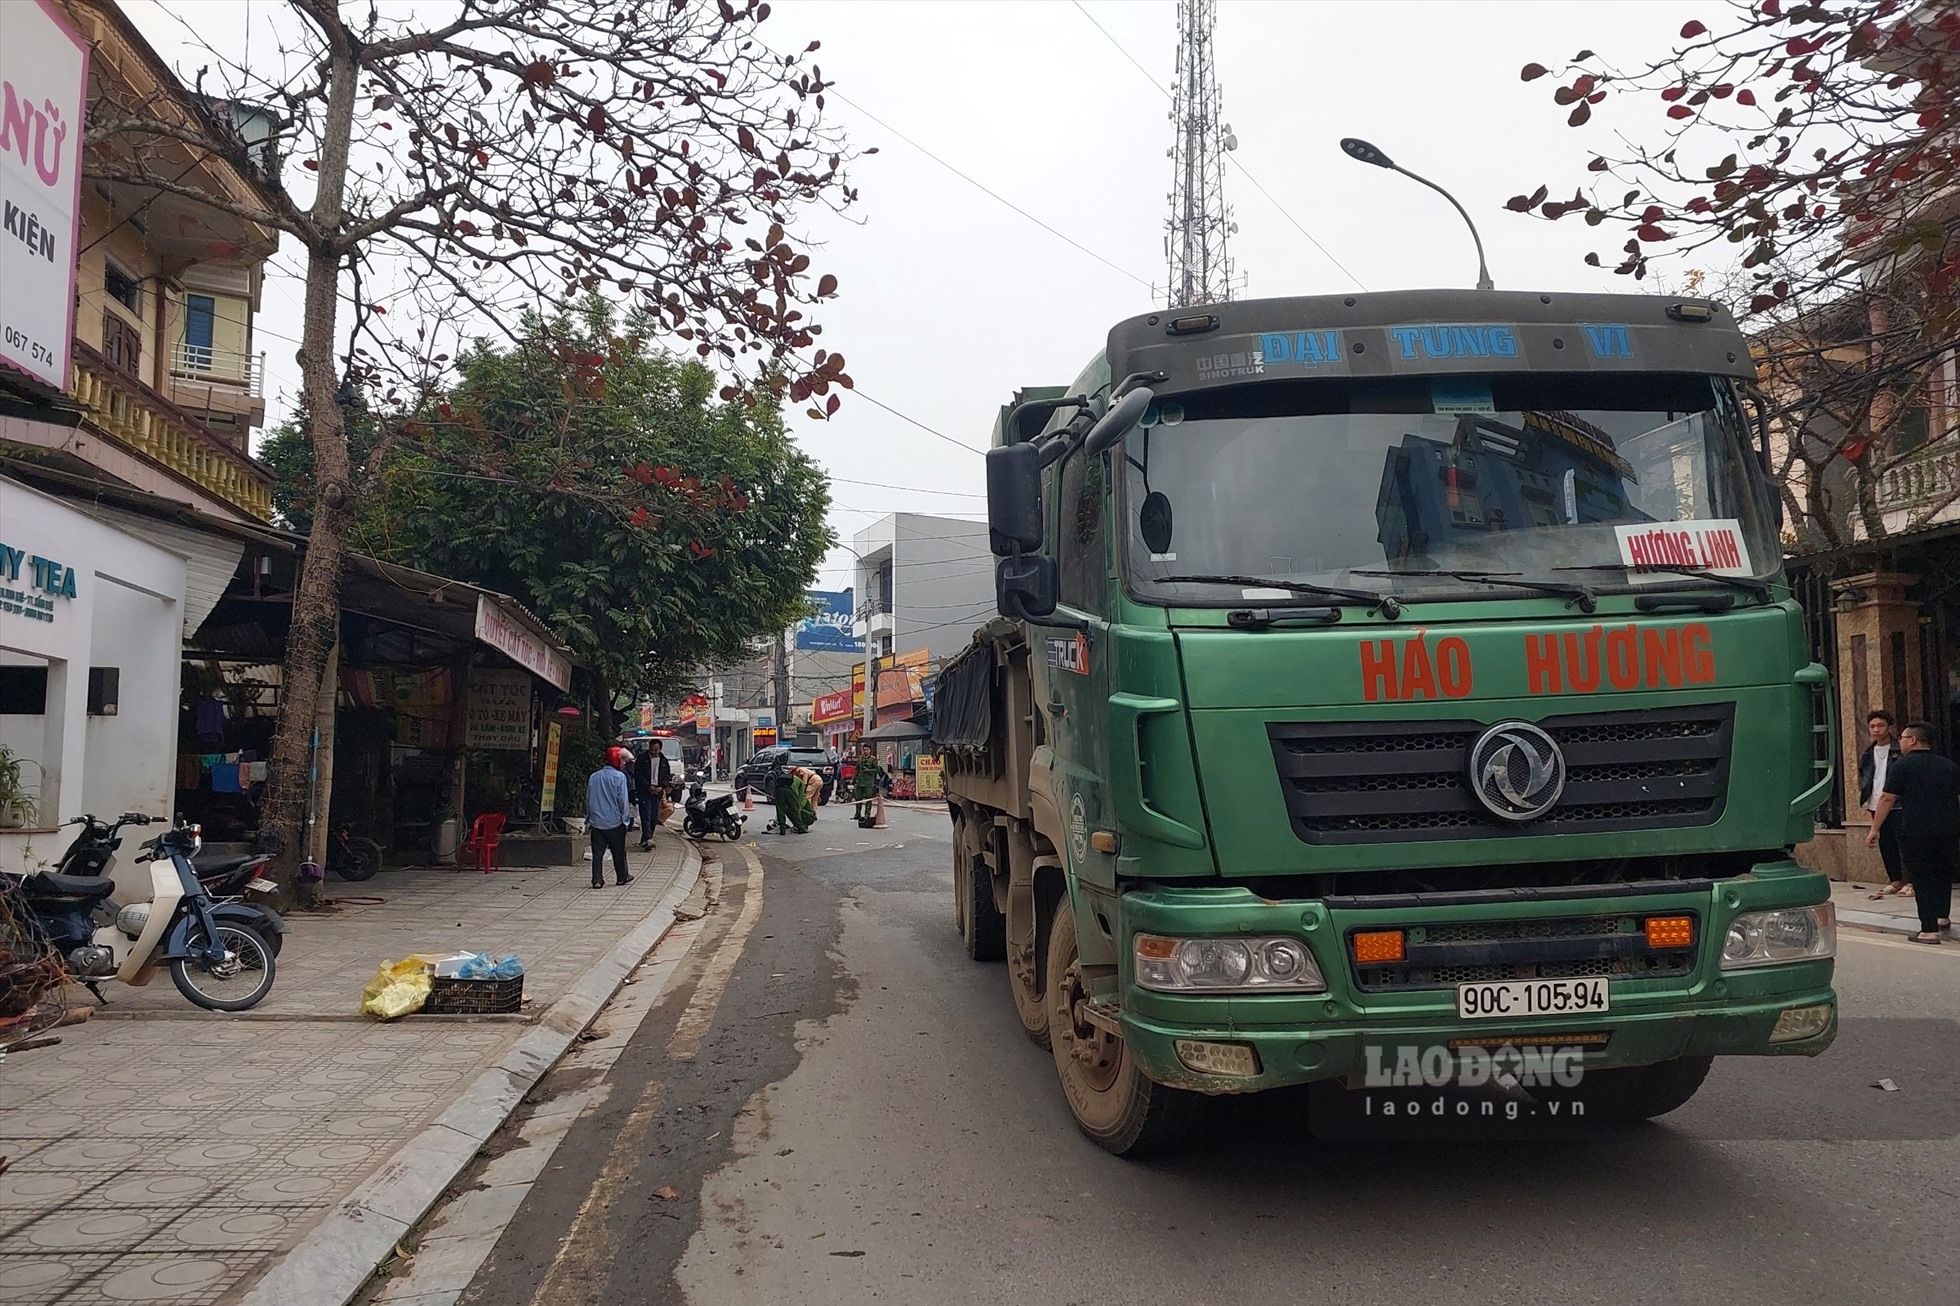 Phú Thọ: Va chạm với xe chở đá, 1 người tử vong